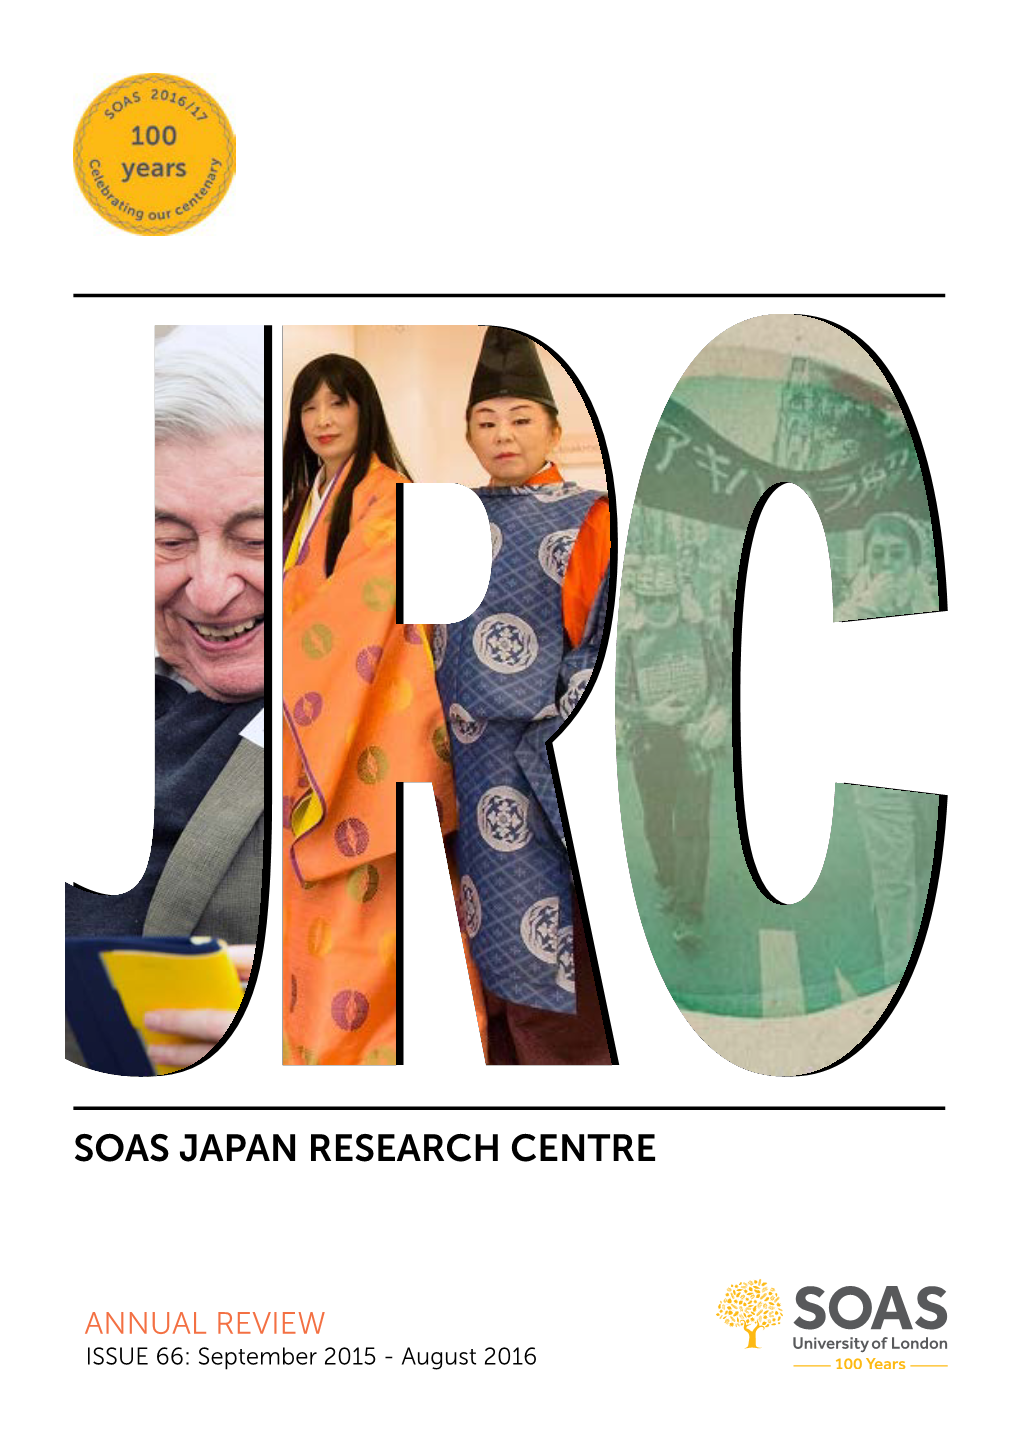 Soas Japan Research Centre